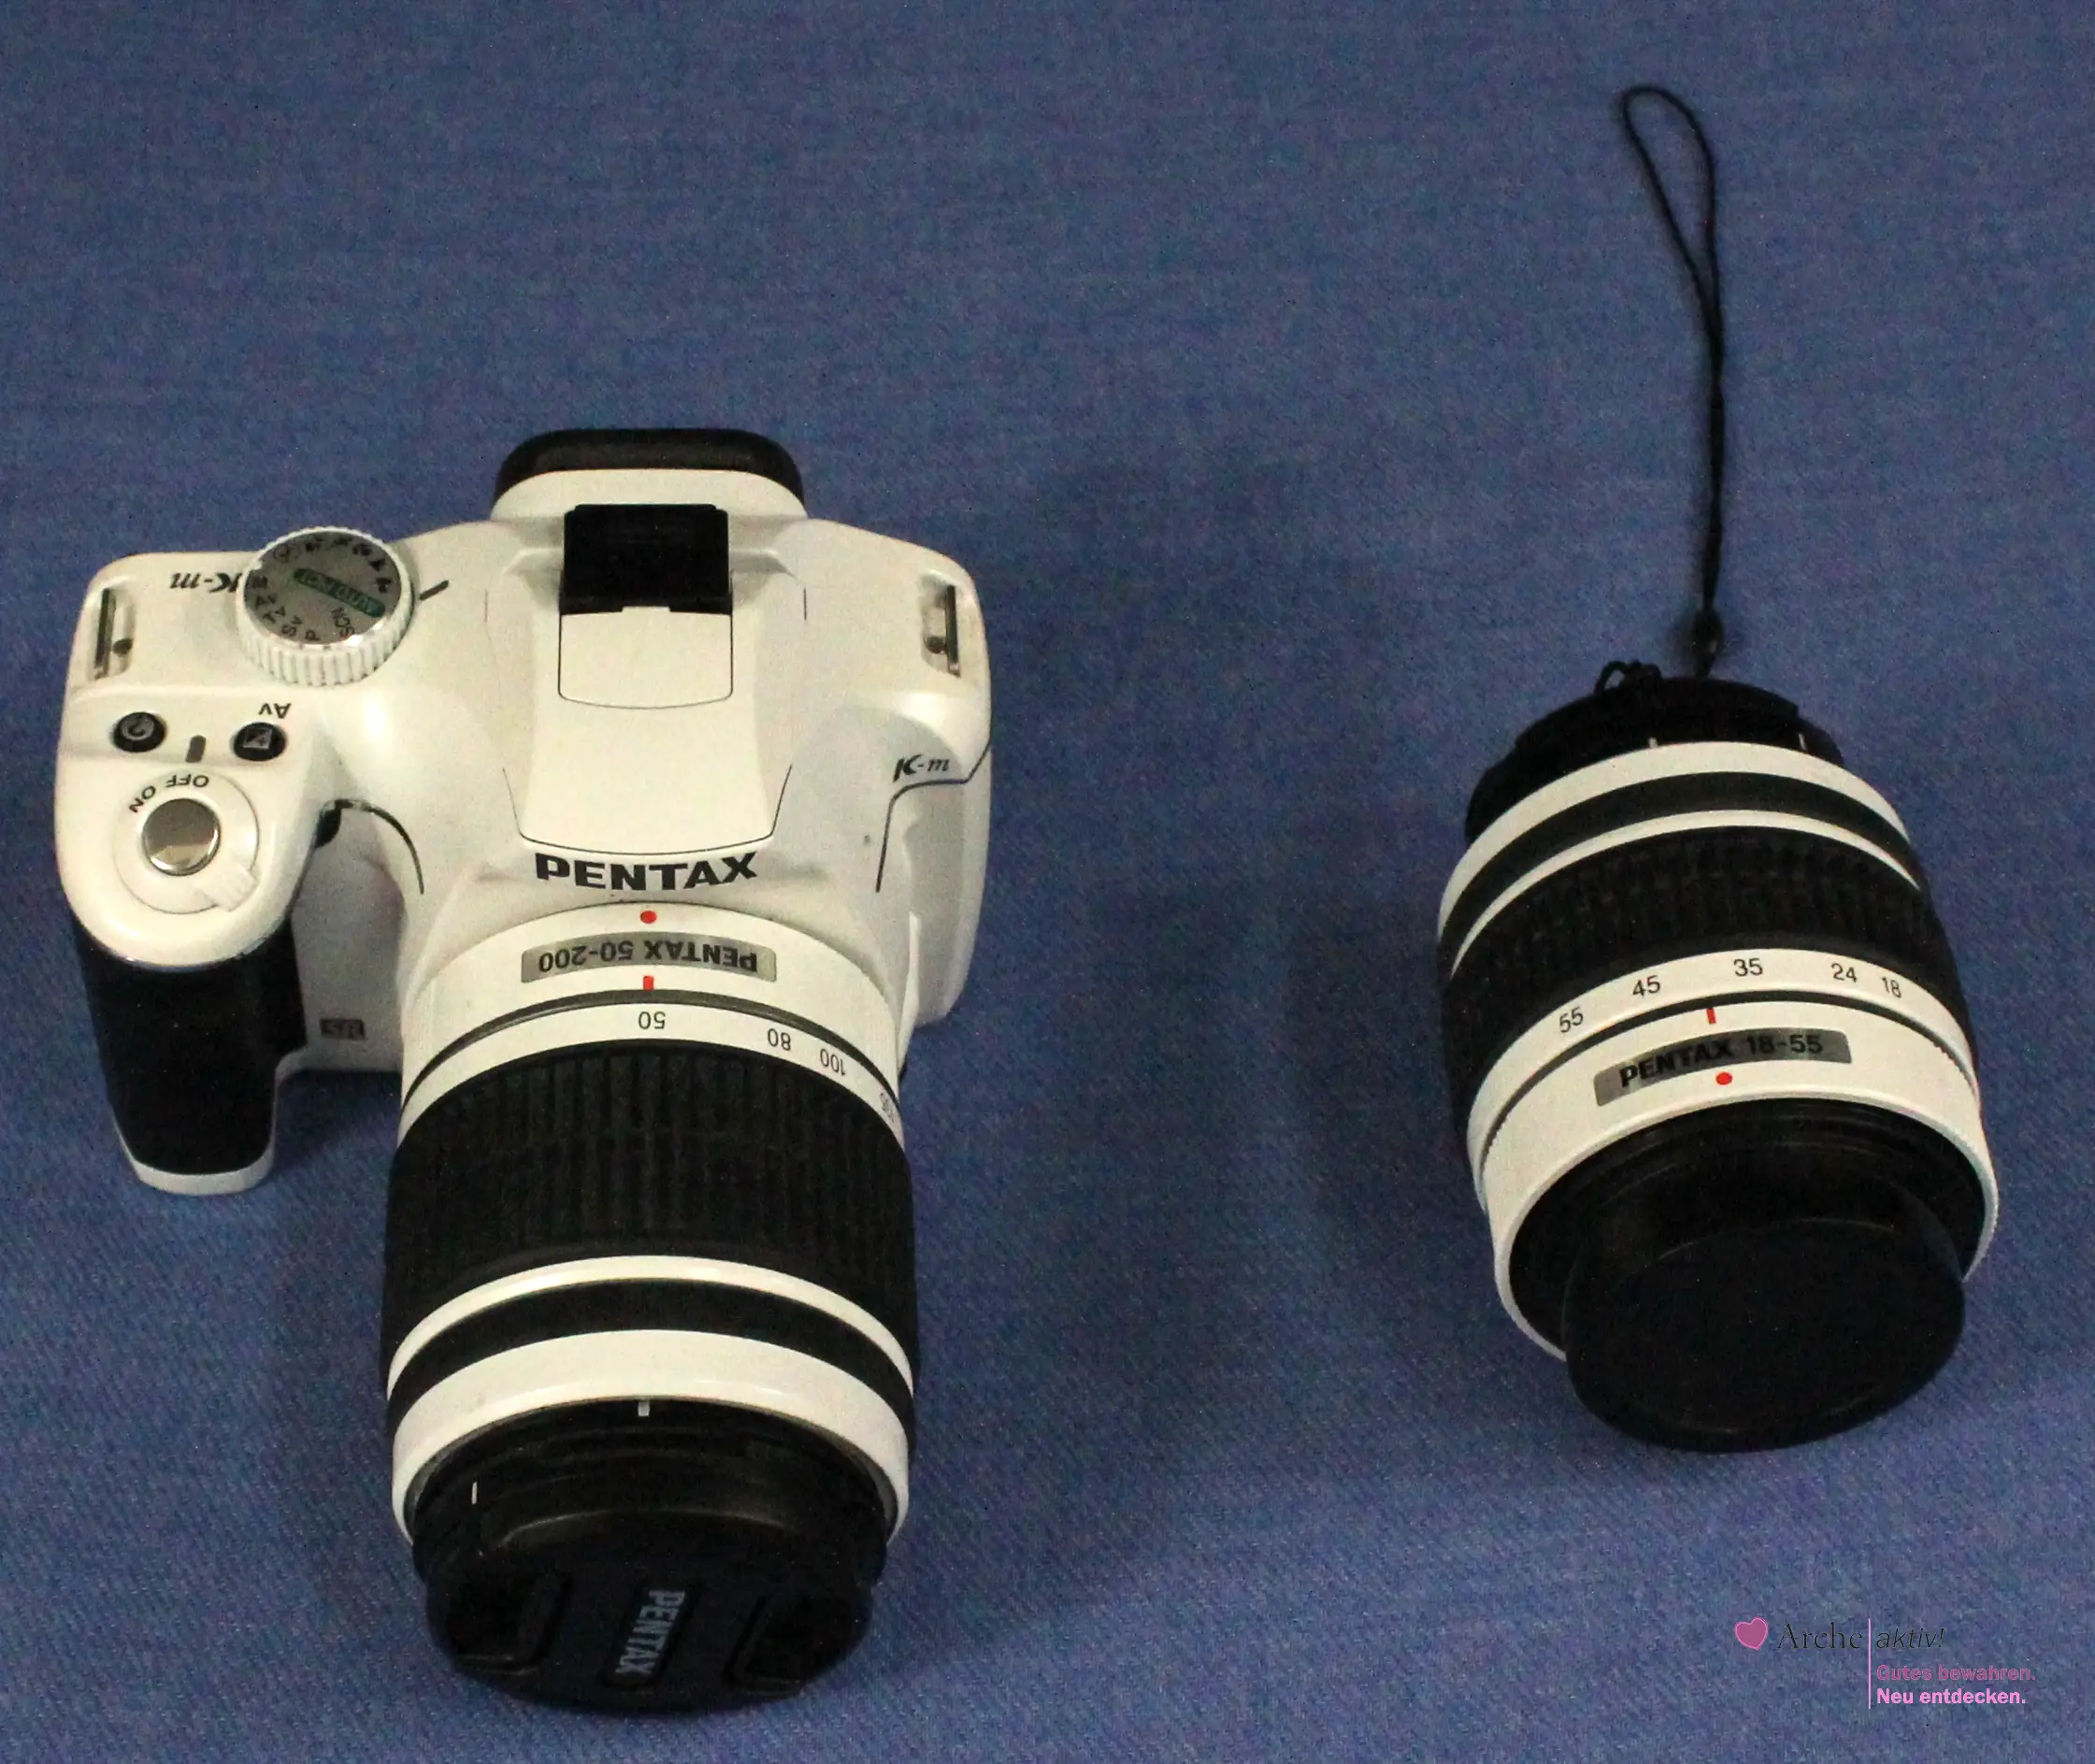 Pentax K-m SR - Digitalkamera weiß mit 2 Objektiven, gebraucht